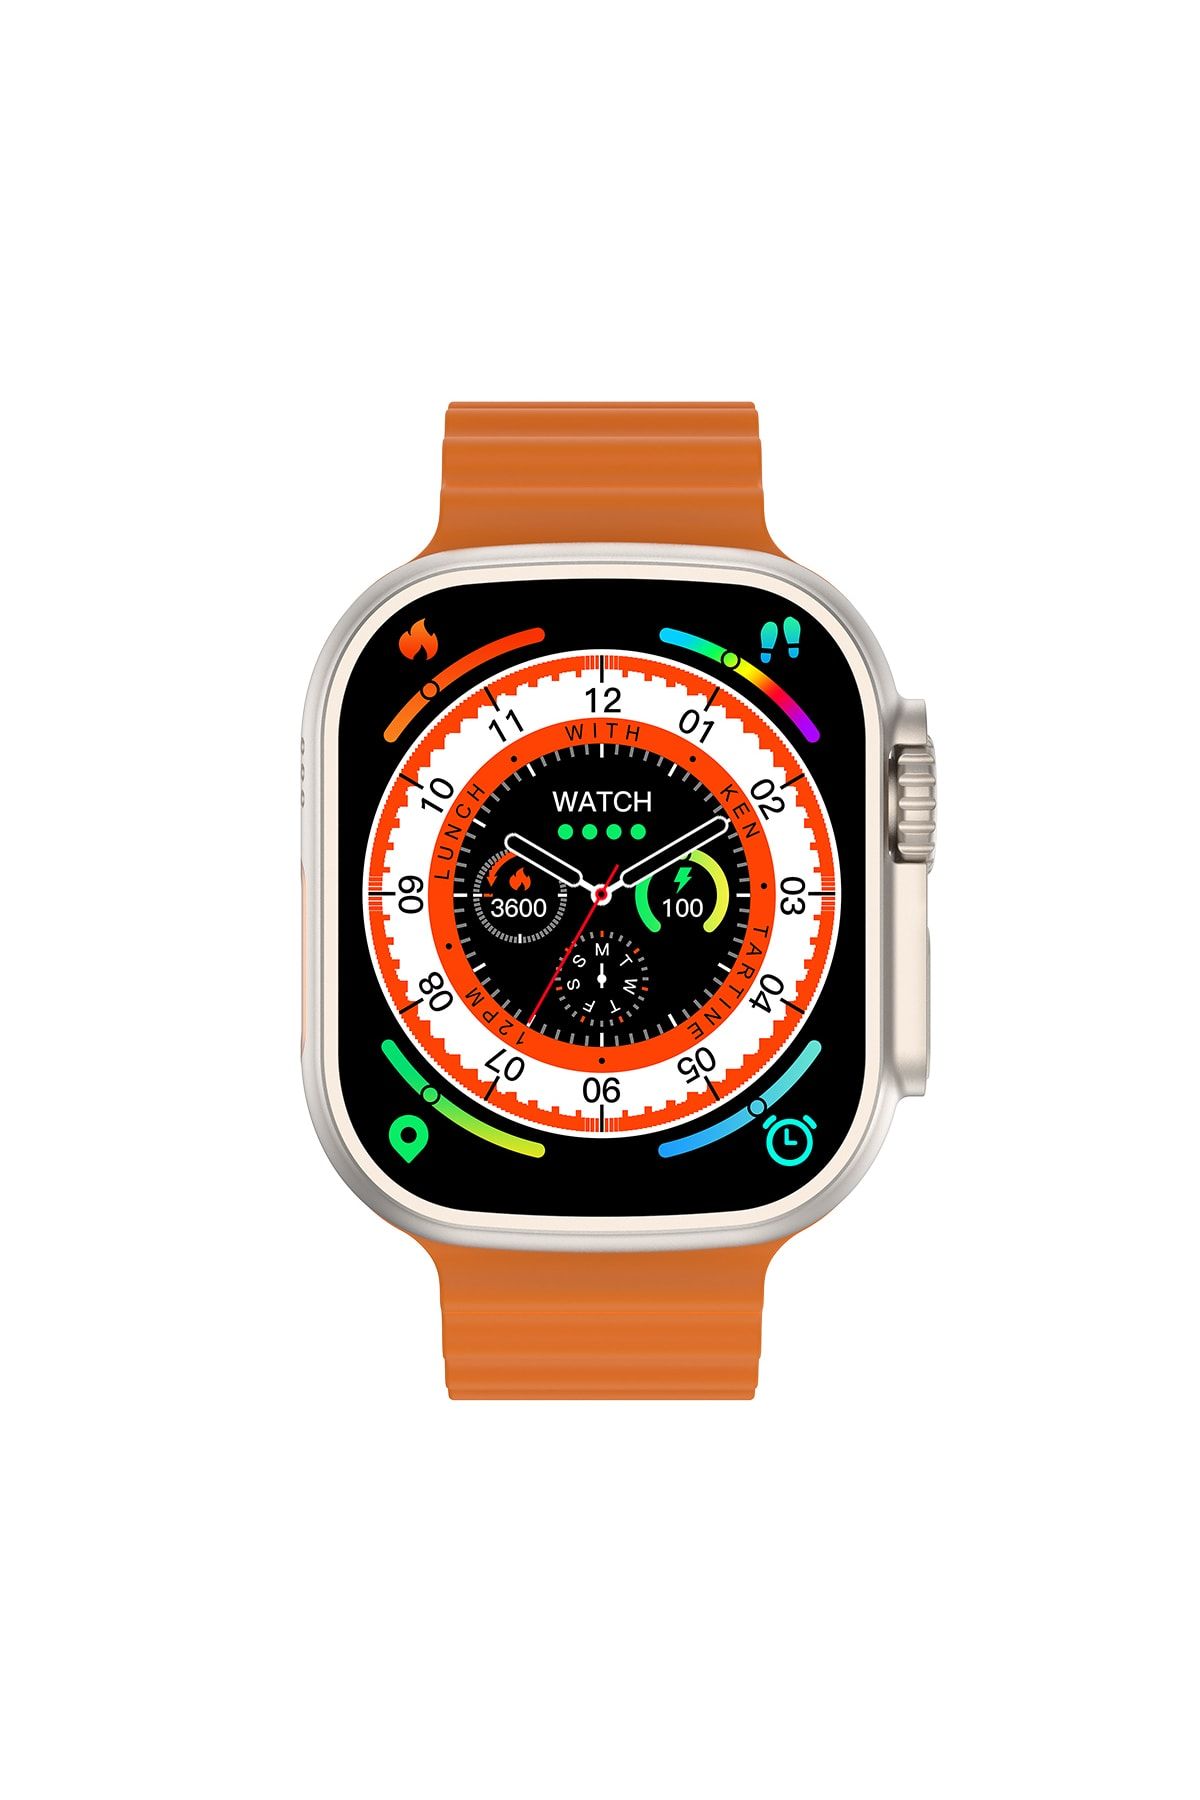 Смарт часы ultra 9. Смарт часы Microwear. Часы Microwear watch Ultra. Microwear w68 + Ultra. HK 8 Ultra Smart watch.